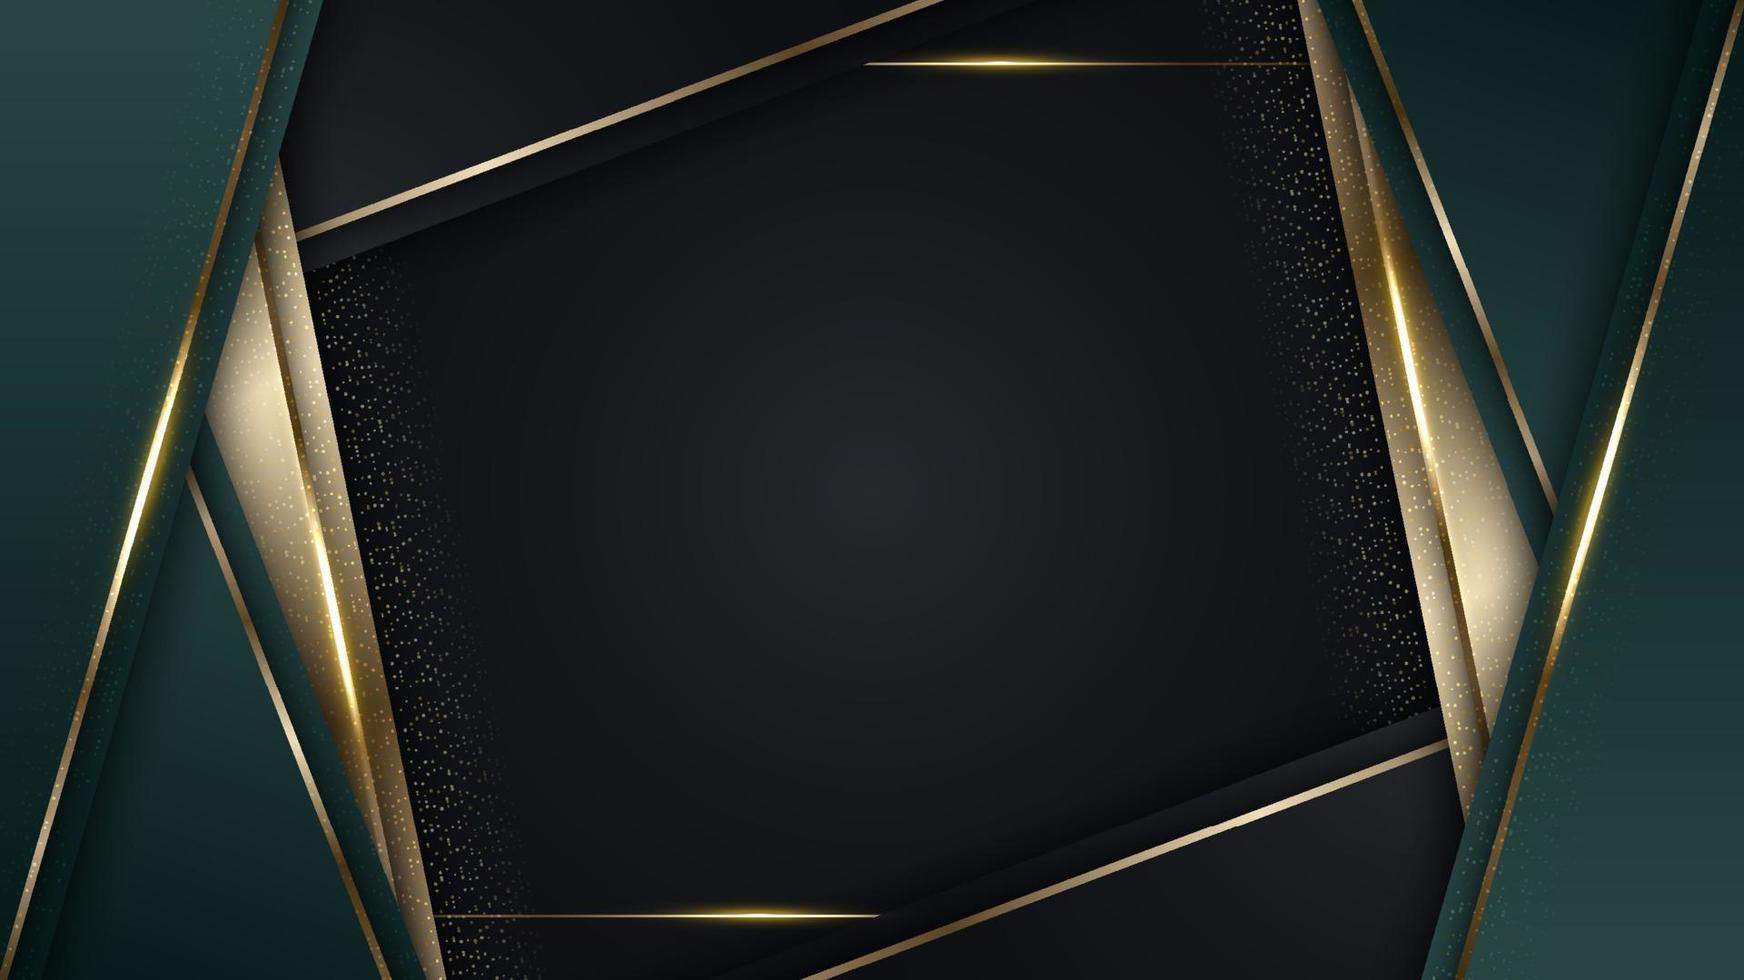 3D-moderne luxe sjabloonontwerp groene en gouden strepen met gouden glitter lijn licht vonken op zwarte achtergrond vector